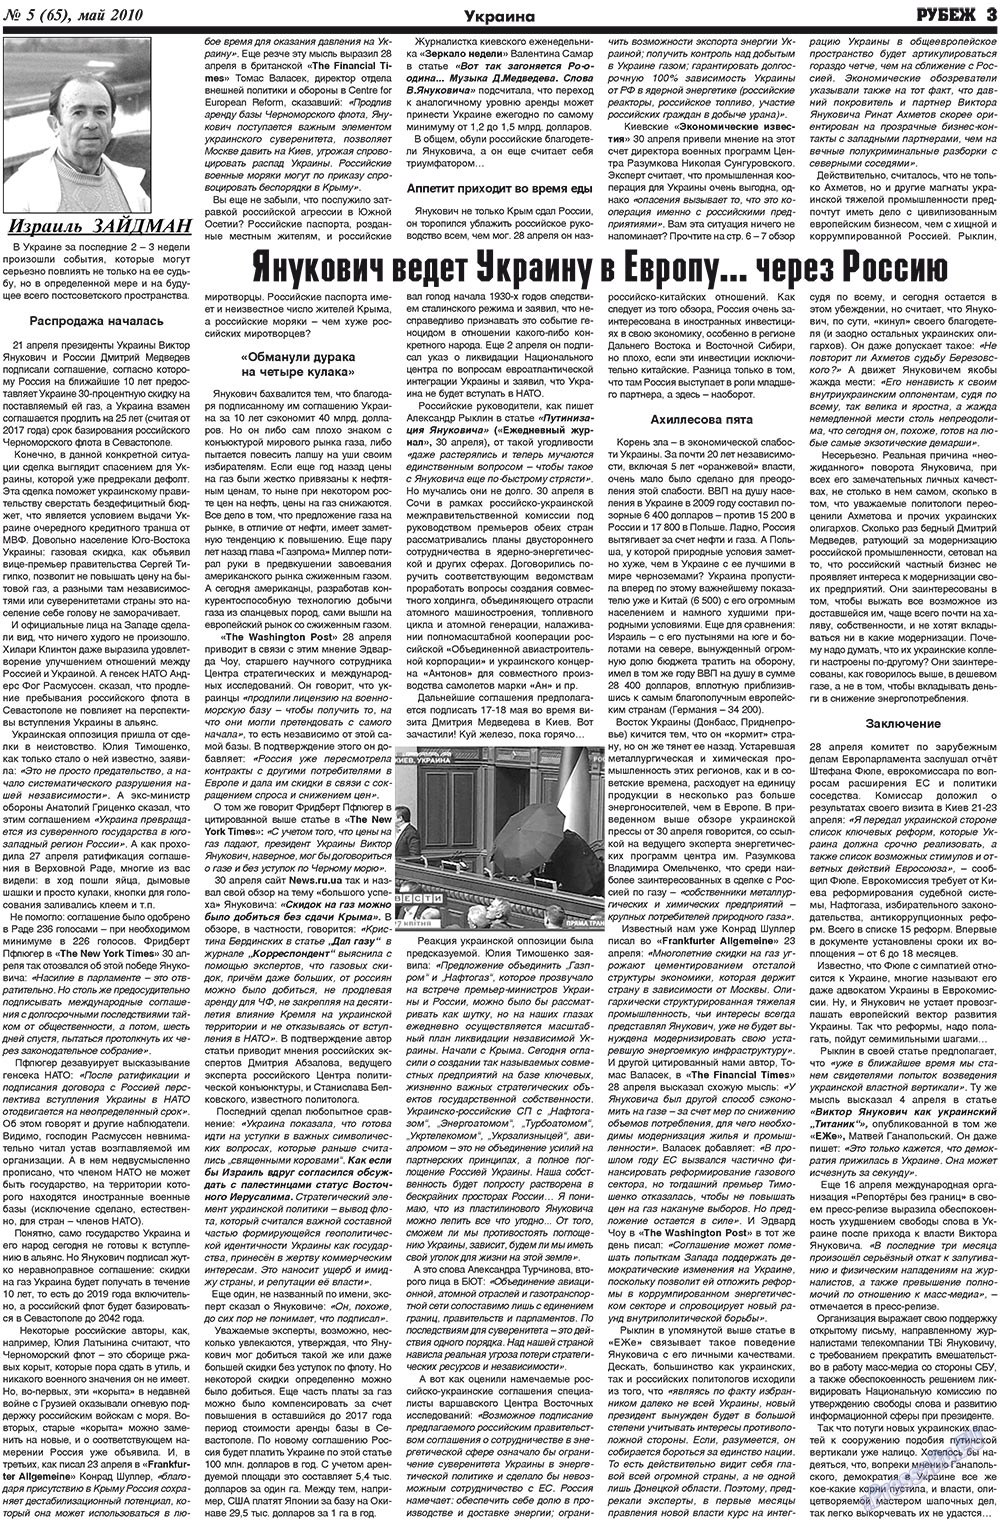 Рубеж (газета). 2010 год, номер 5, стр. 3